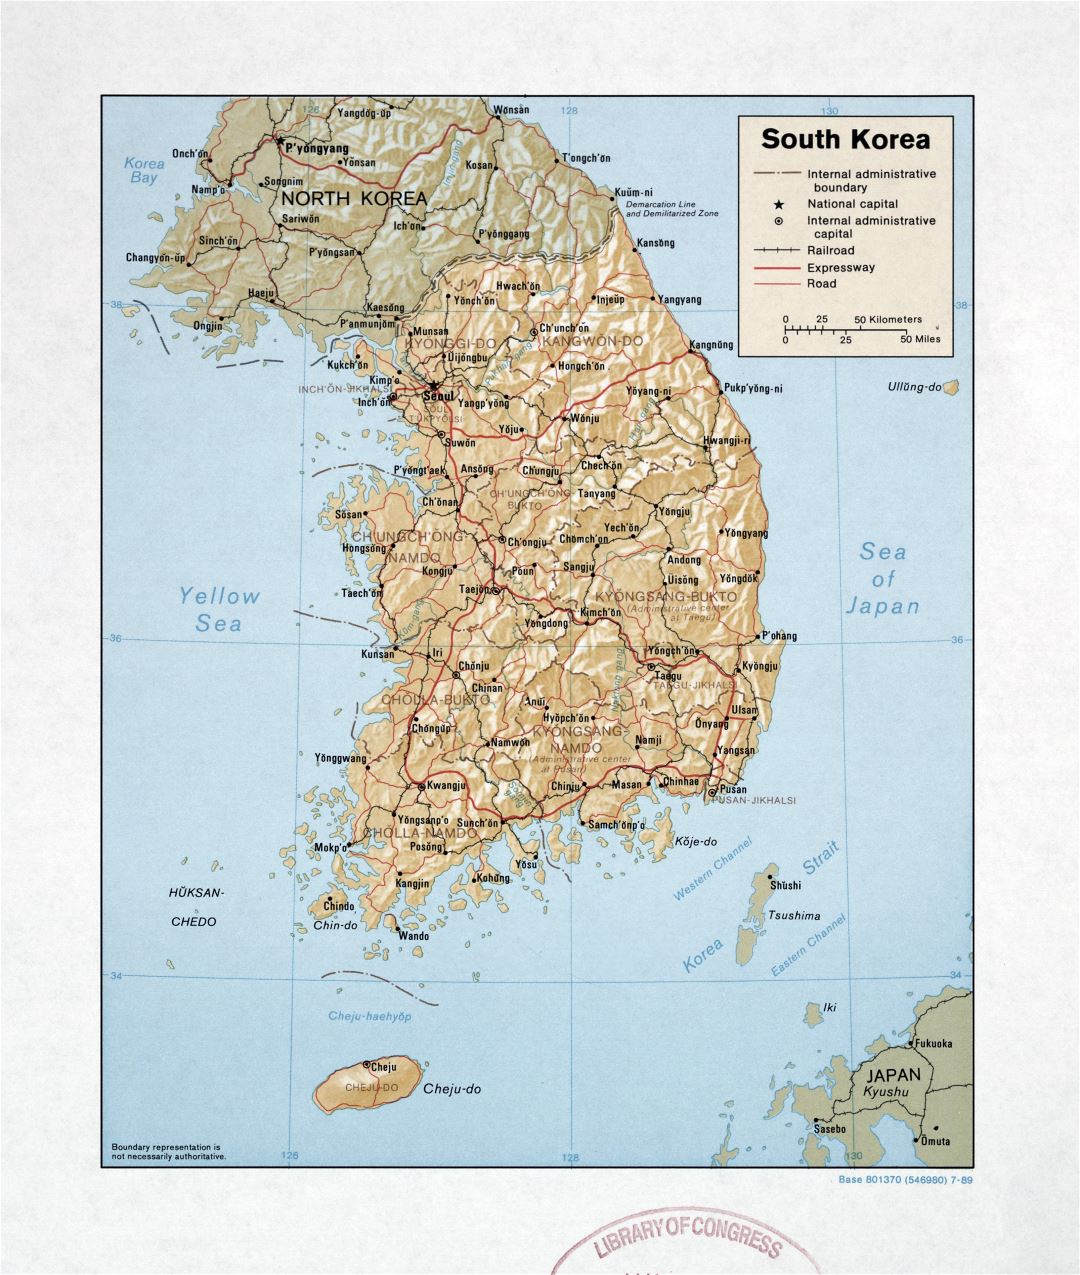 Grande detallado mapa político y administrativo de Corea del Sur con relieve, carreteras, ferrocarriles y principales ciudades - 1989